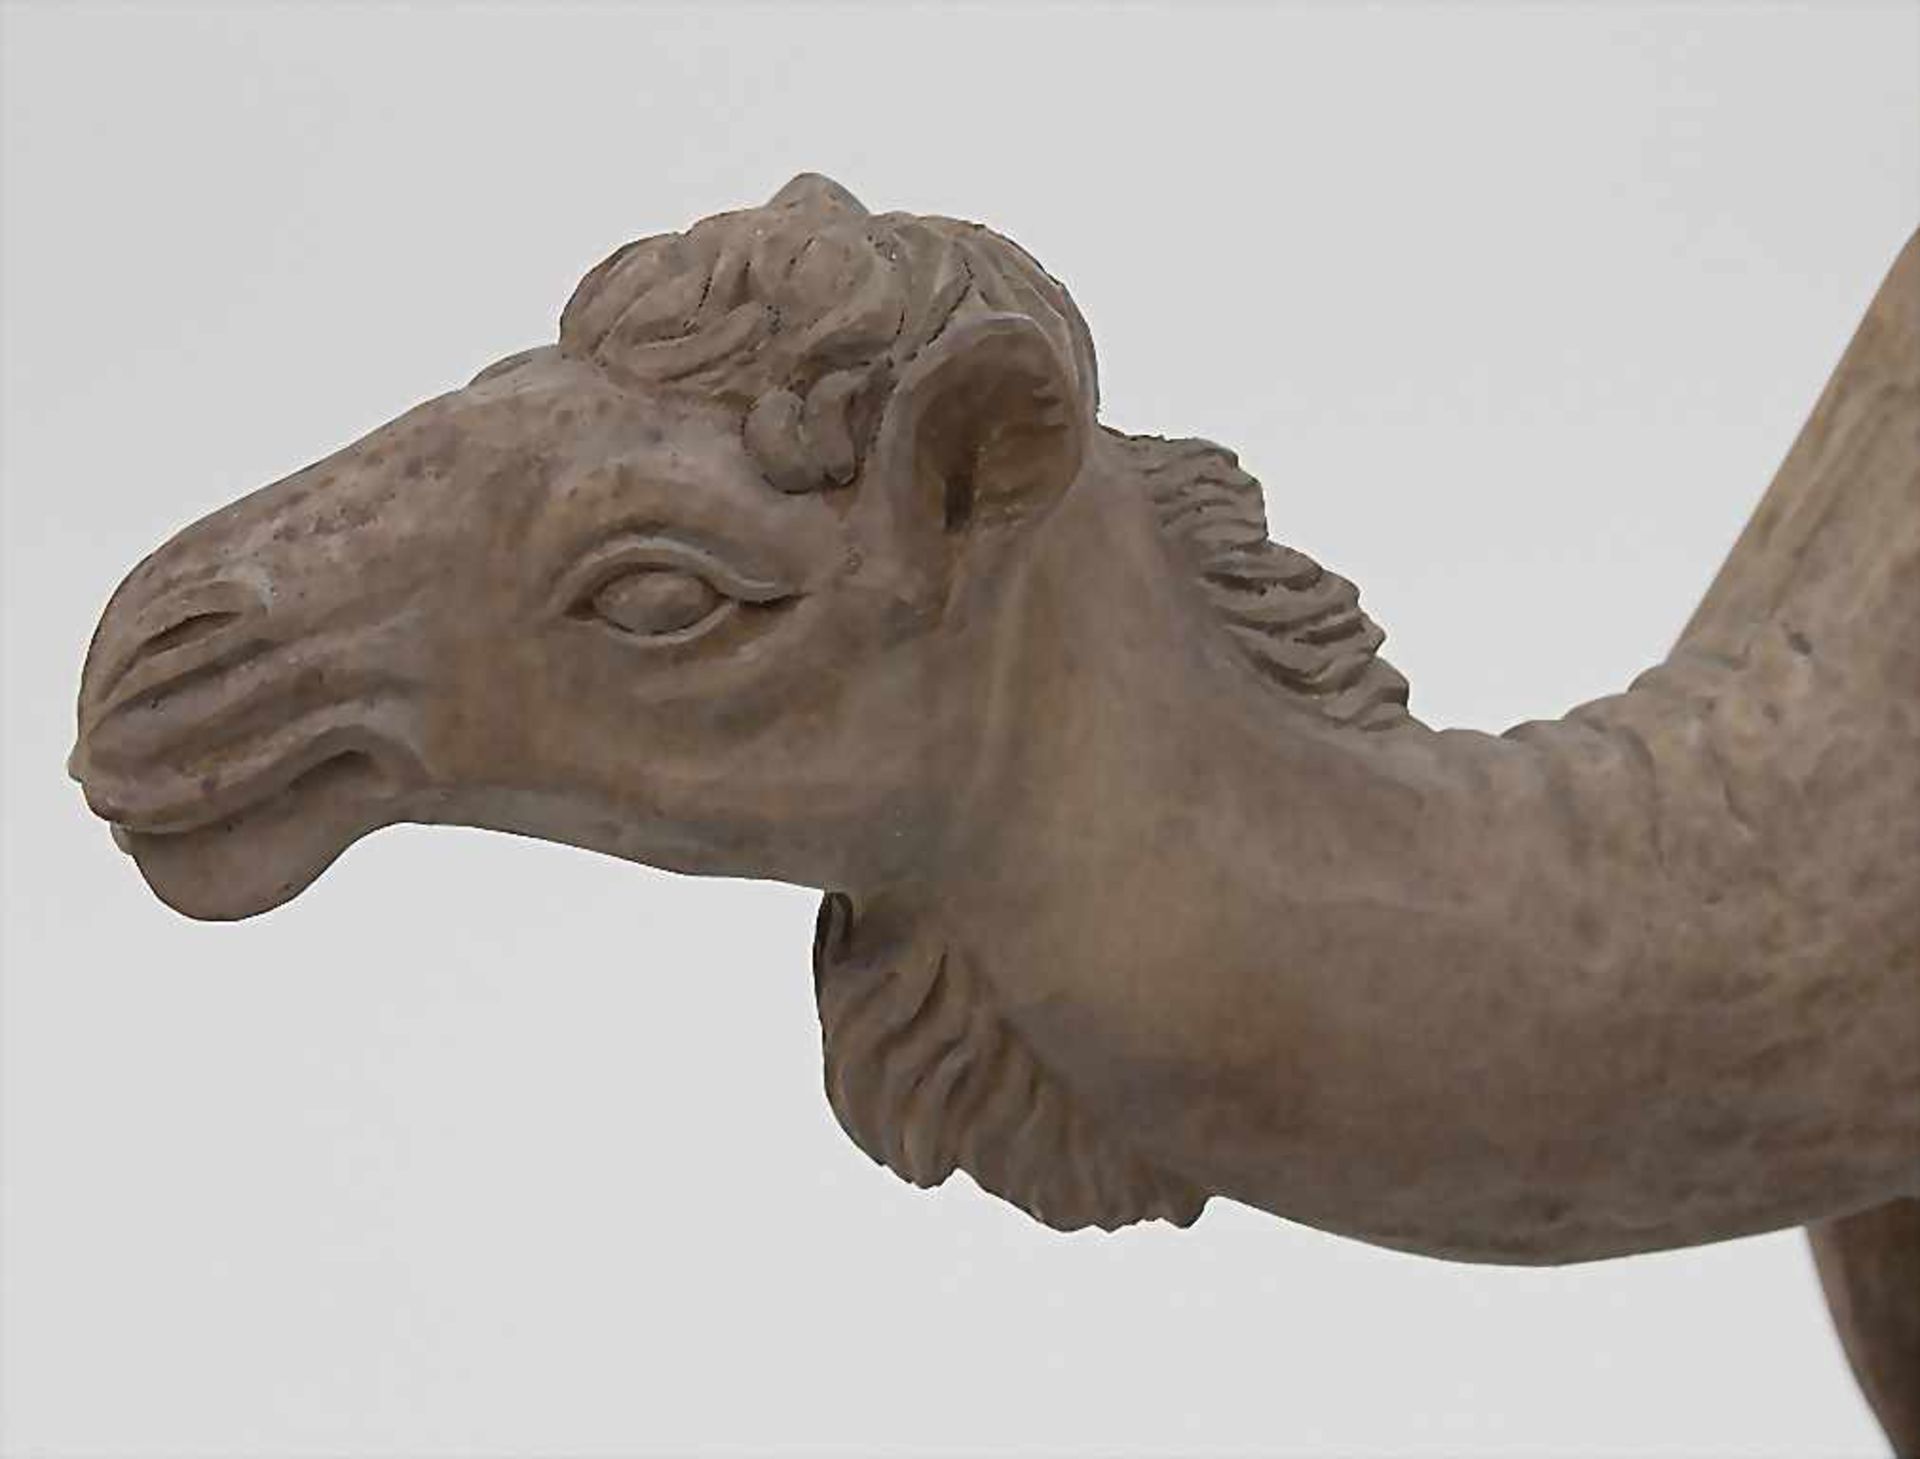 Unbekannter Künstler (20. Jh.), 'Kamel' / 'A camel' Technik: Holz, geschnitzt, Signatur: unsigniert, - Bild 2 aus 2